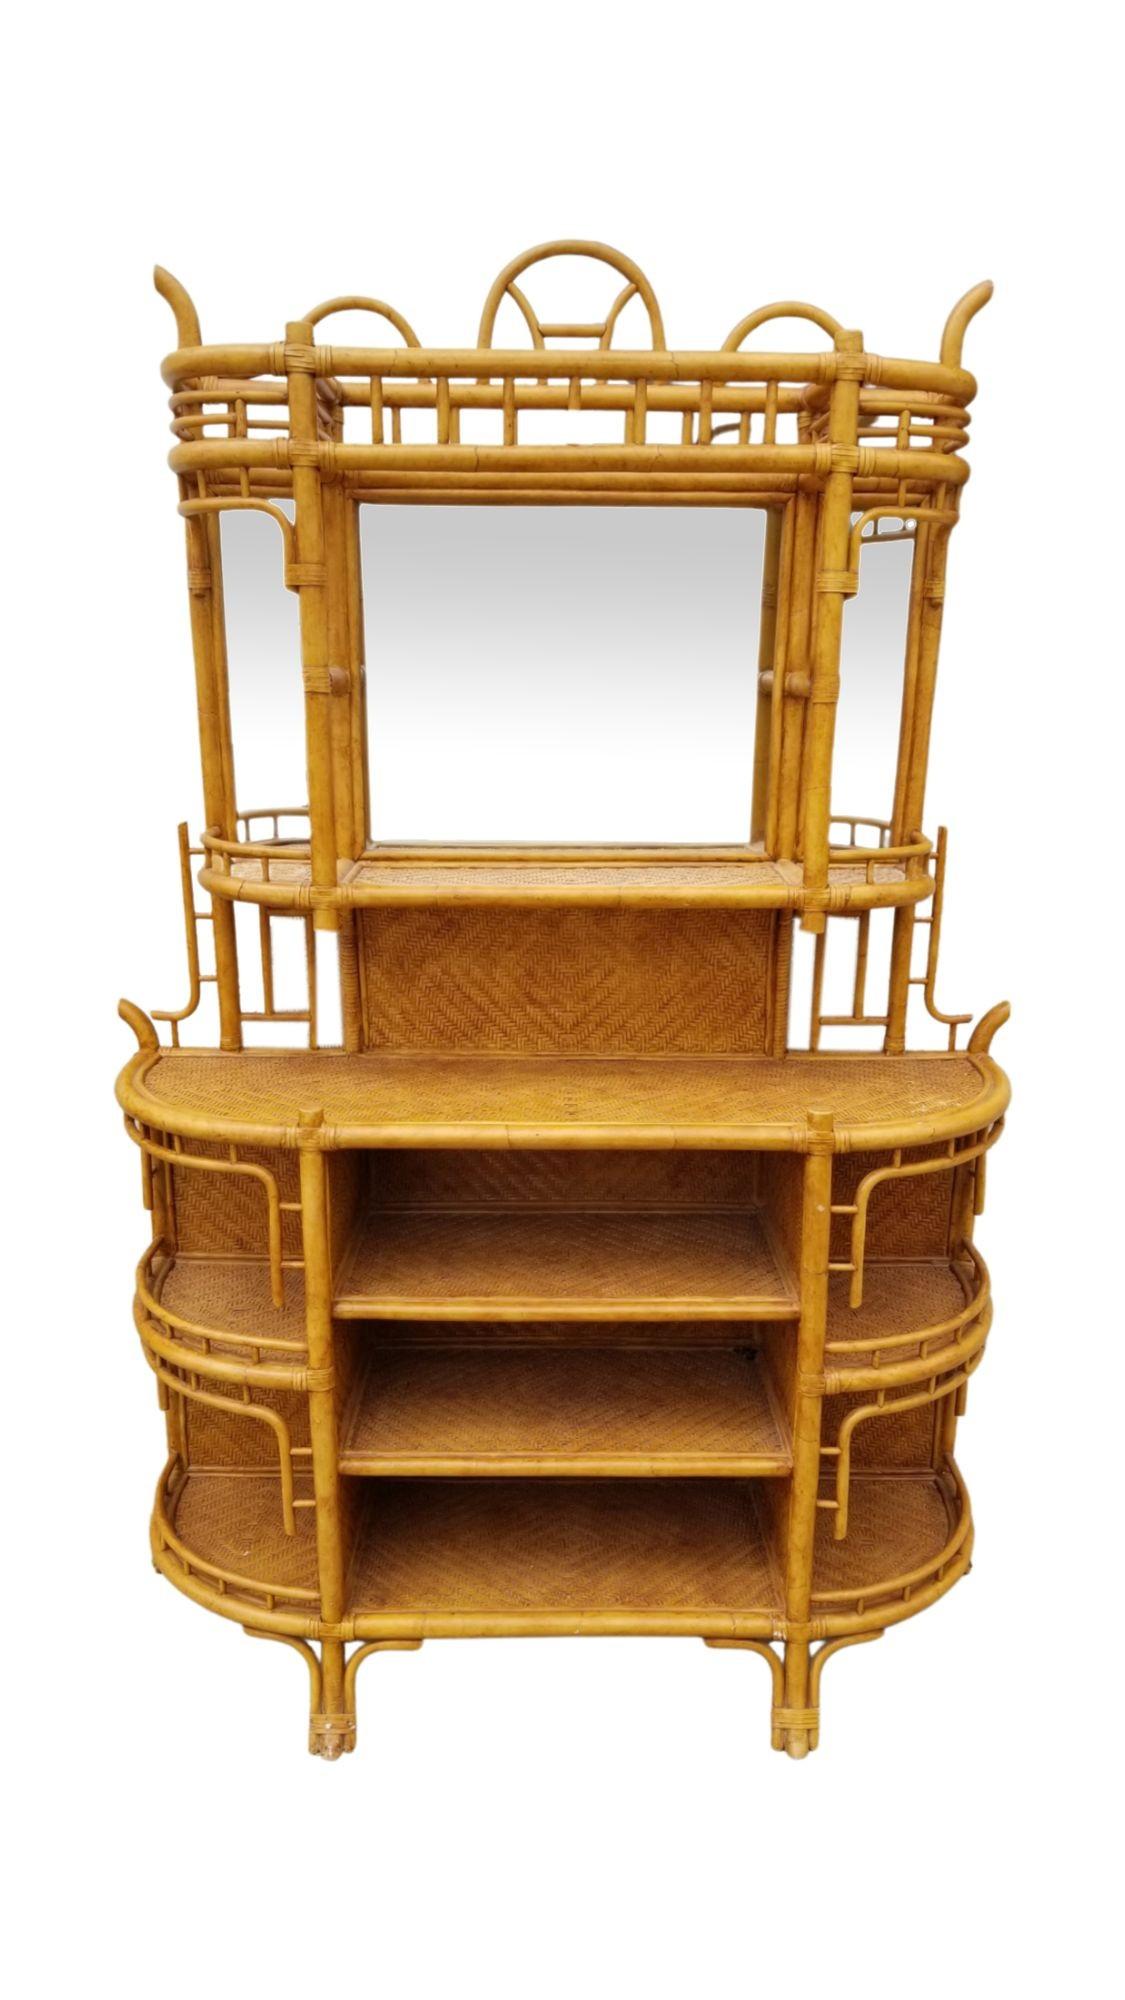 Bei der von James Mont inspirierten Etagere handelt es sich um ein Möbelstück mit offenen Regalen oder Ausstellungsebenen, die in der Regel aus Holz, Metall oder Glas bestehen. Es dient sowohl funktionalen als auch dekorativen Zwecken und bietet